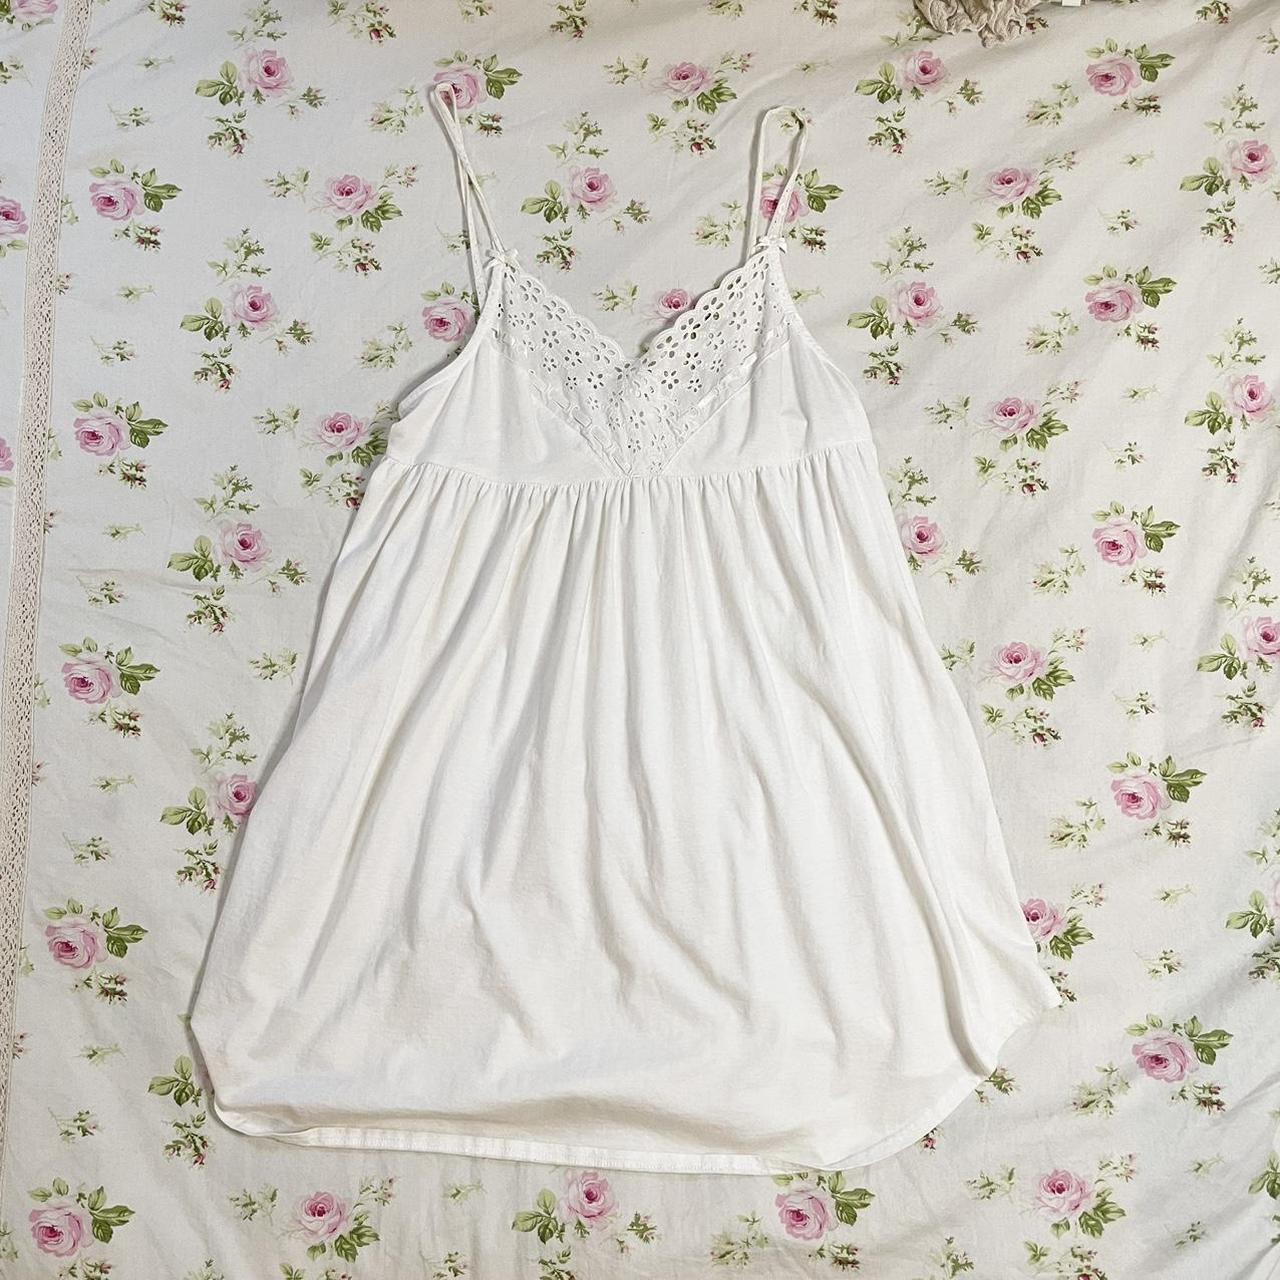 white lace/ribbon babydoll dress 🪽 ᰔ. size:... - Depop